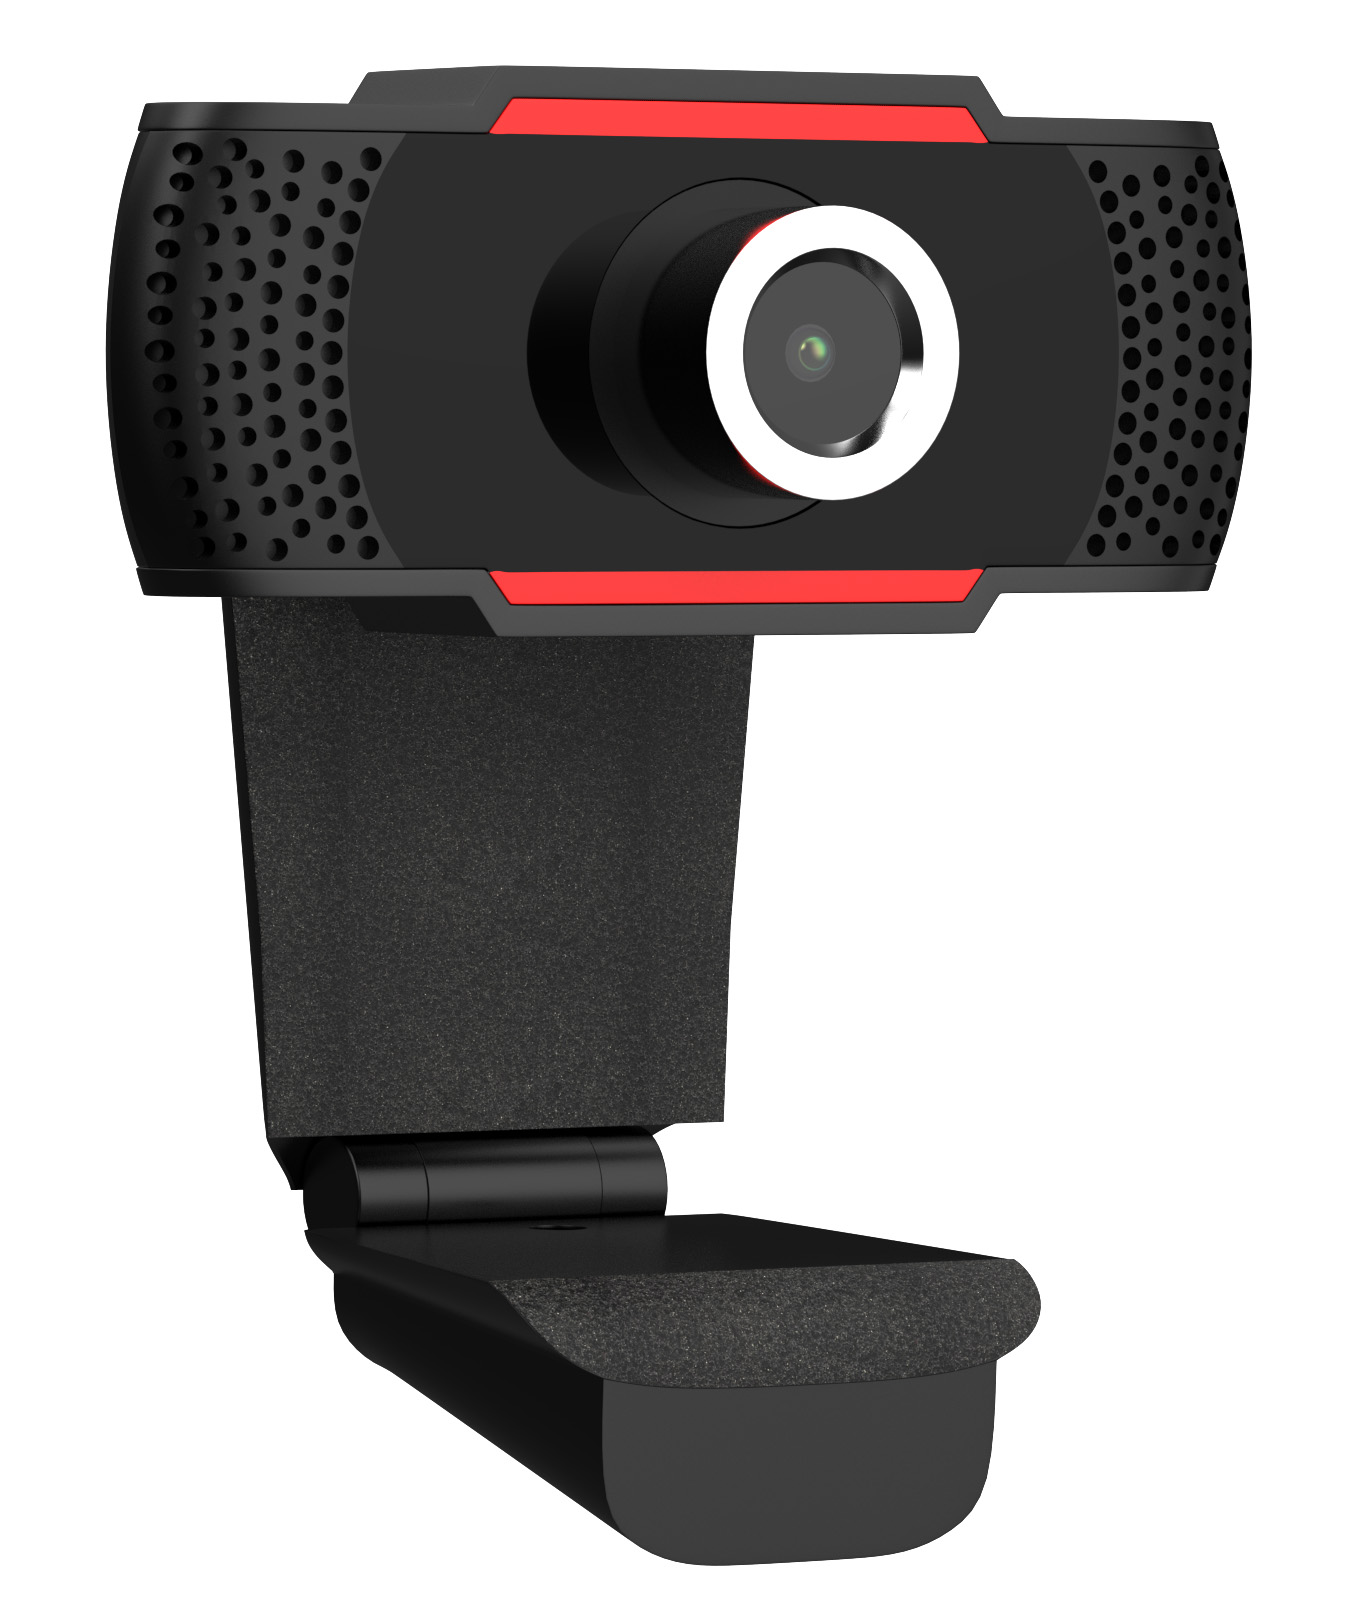 Kdely Webcam 1080P Full HD Webkamera mit Geräuschunterdrückendem Mikrofon Plug und Play USB PC Kamera Videoanrufe Computerkamera für Aufzeichnen,Online-Unterricht,Spiel und Konferenz Live-Streaming 